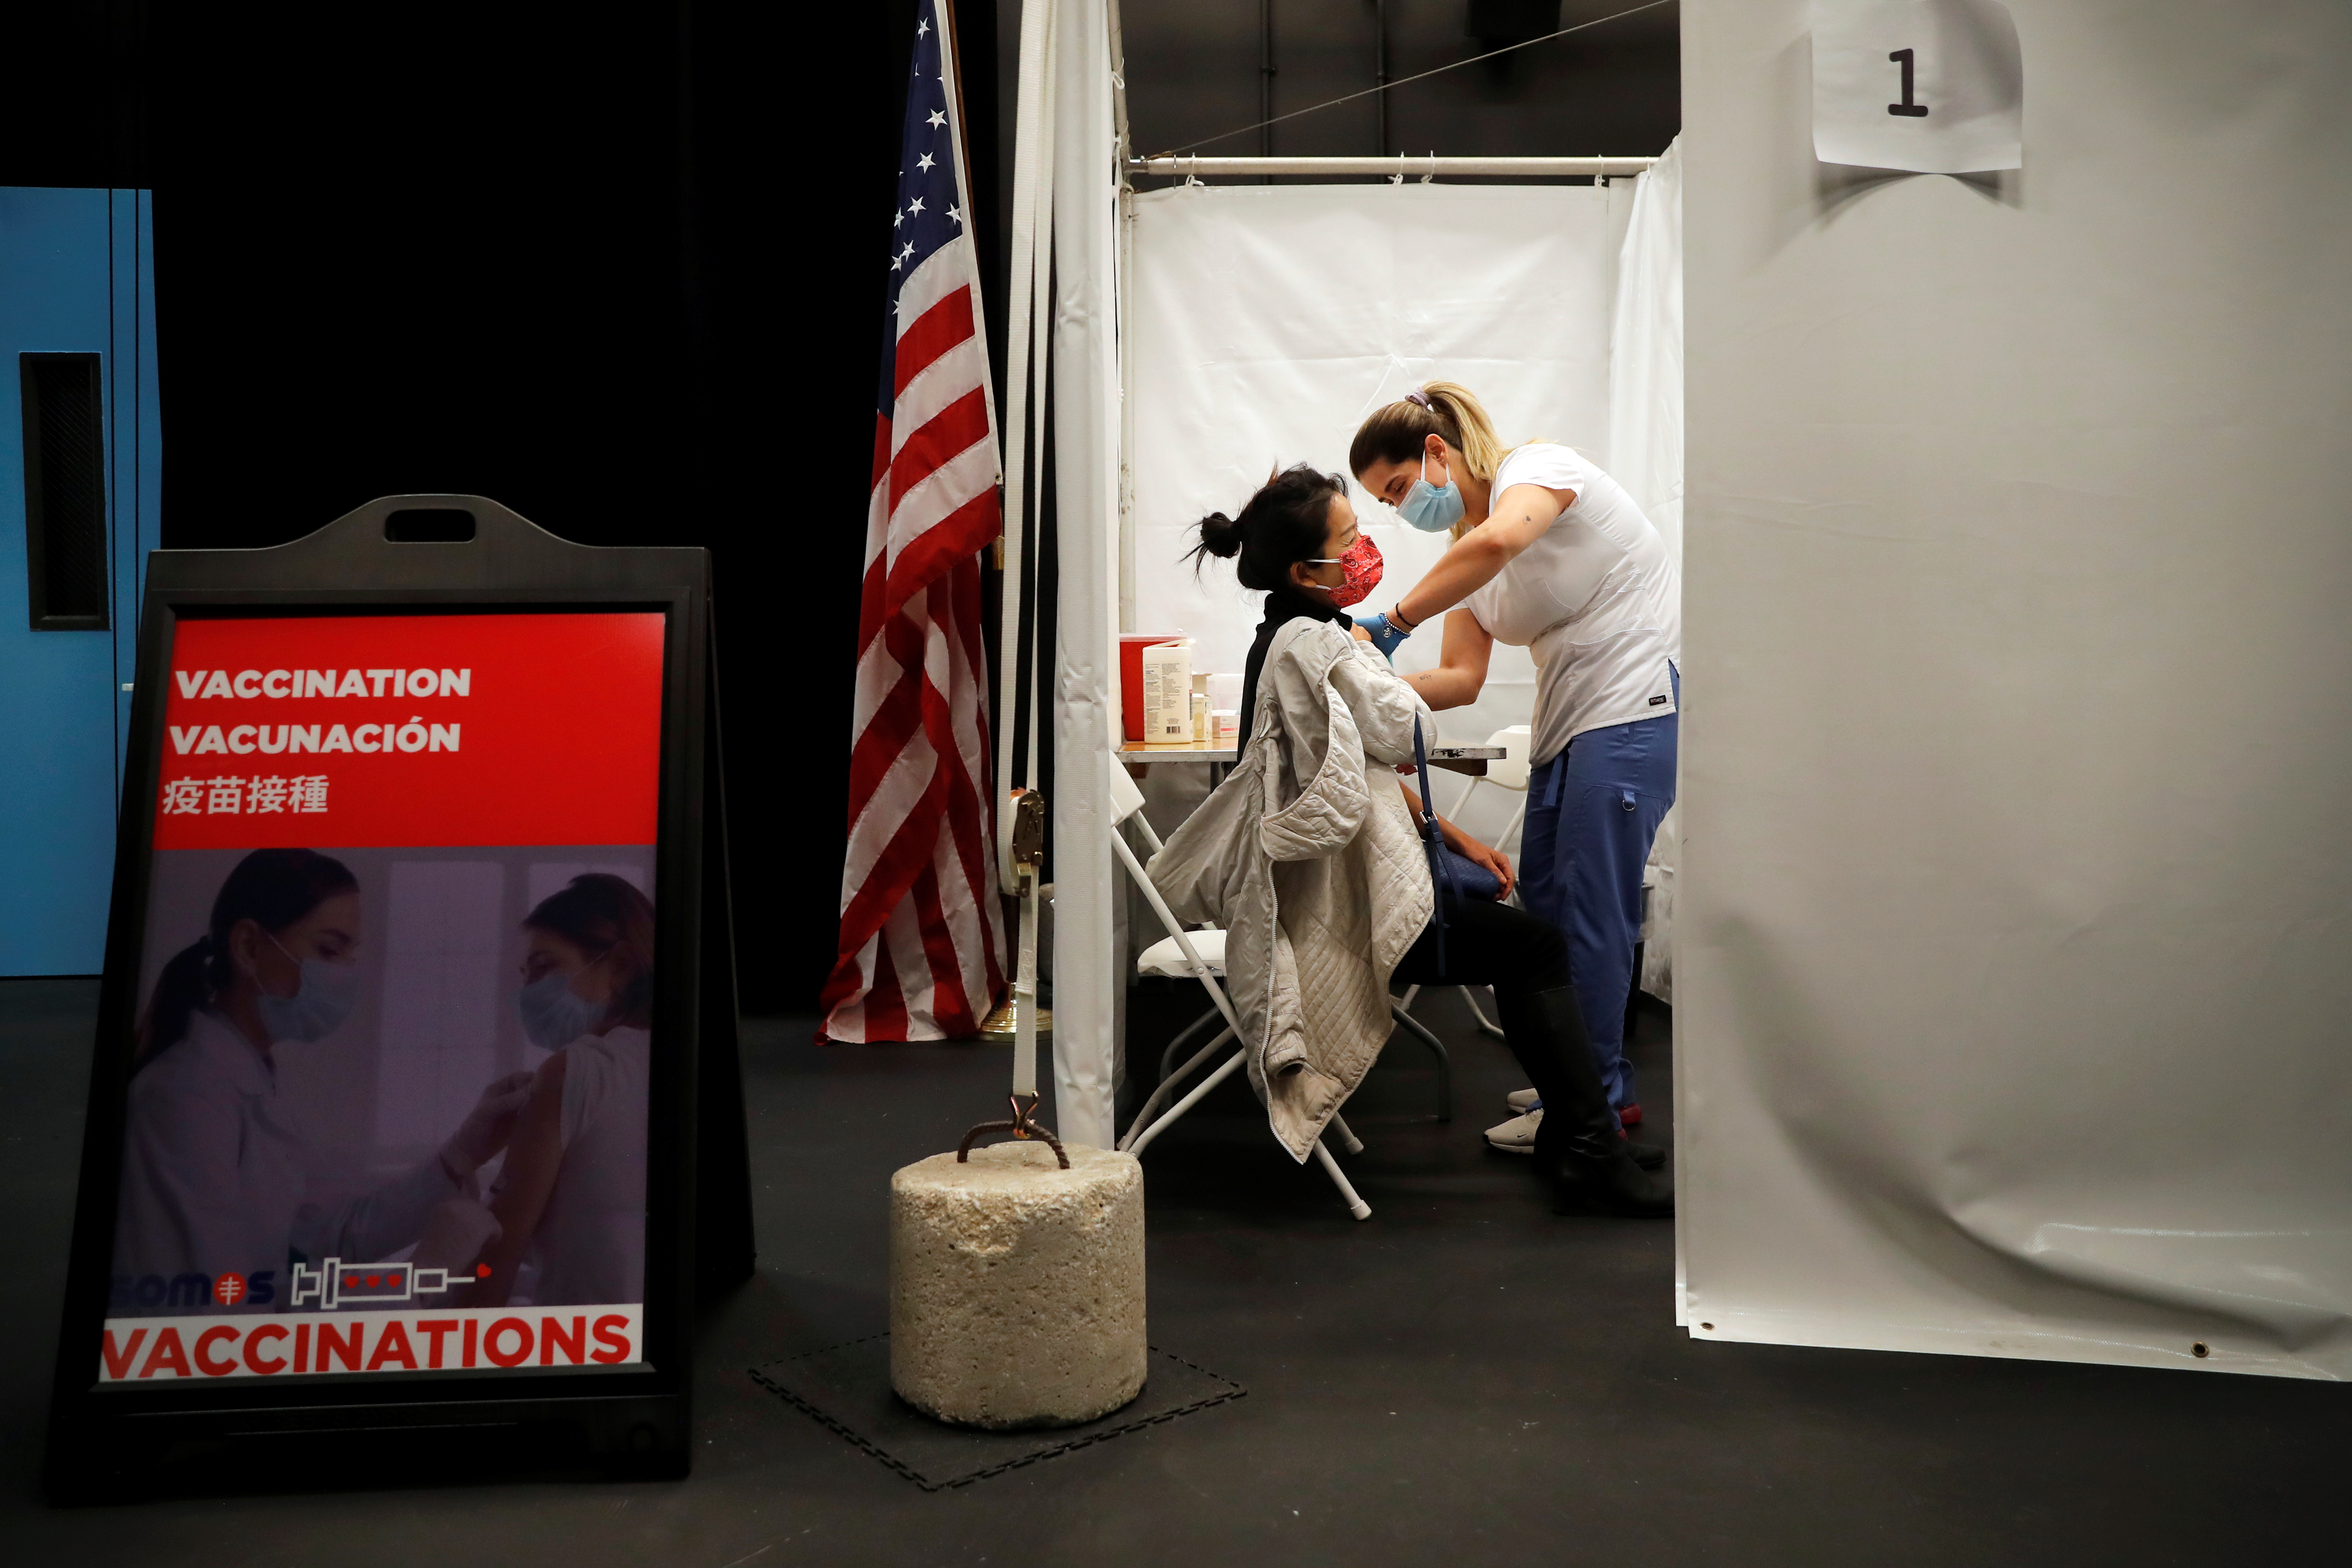 Un trabajador sanitario administra una inyección de la vacuna Moderna COVID-19 a una mujer en un centro de vacunación emergente operado por SOMOS Community Care durante la pandemia de la enfermedad del coronavirus (COVID-19) en Manhattan en la ciudad de Nueva York, Nueva York, Estados Unidos, 29 de enero de 2021. REUTERS